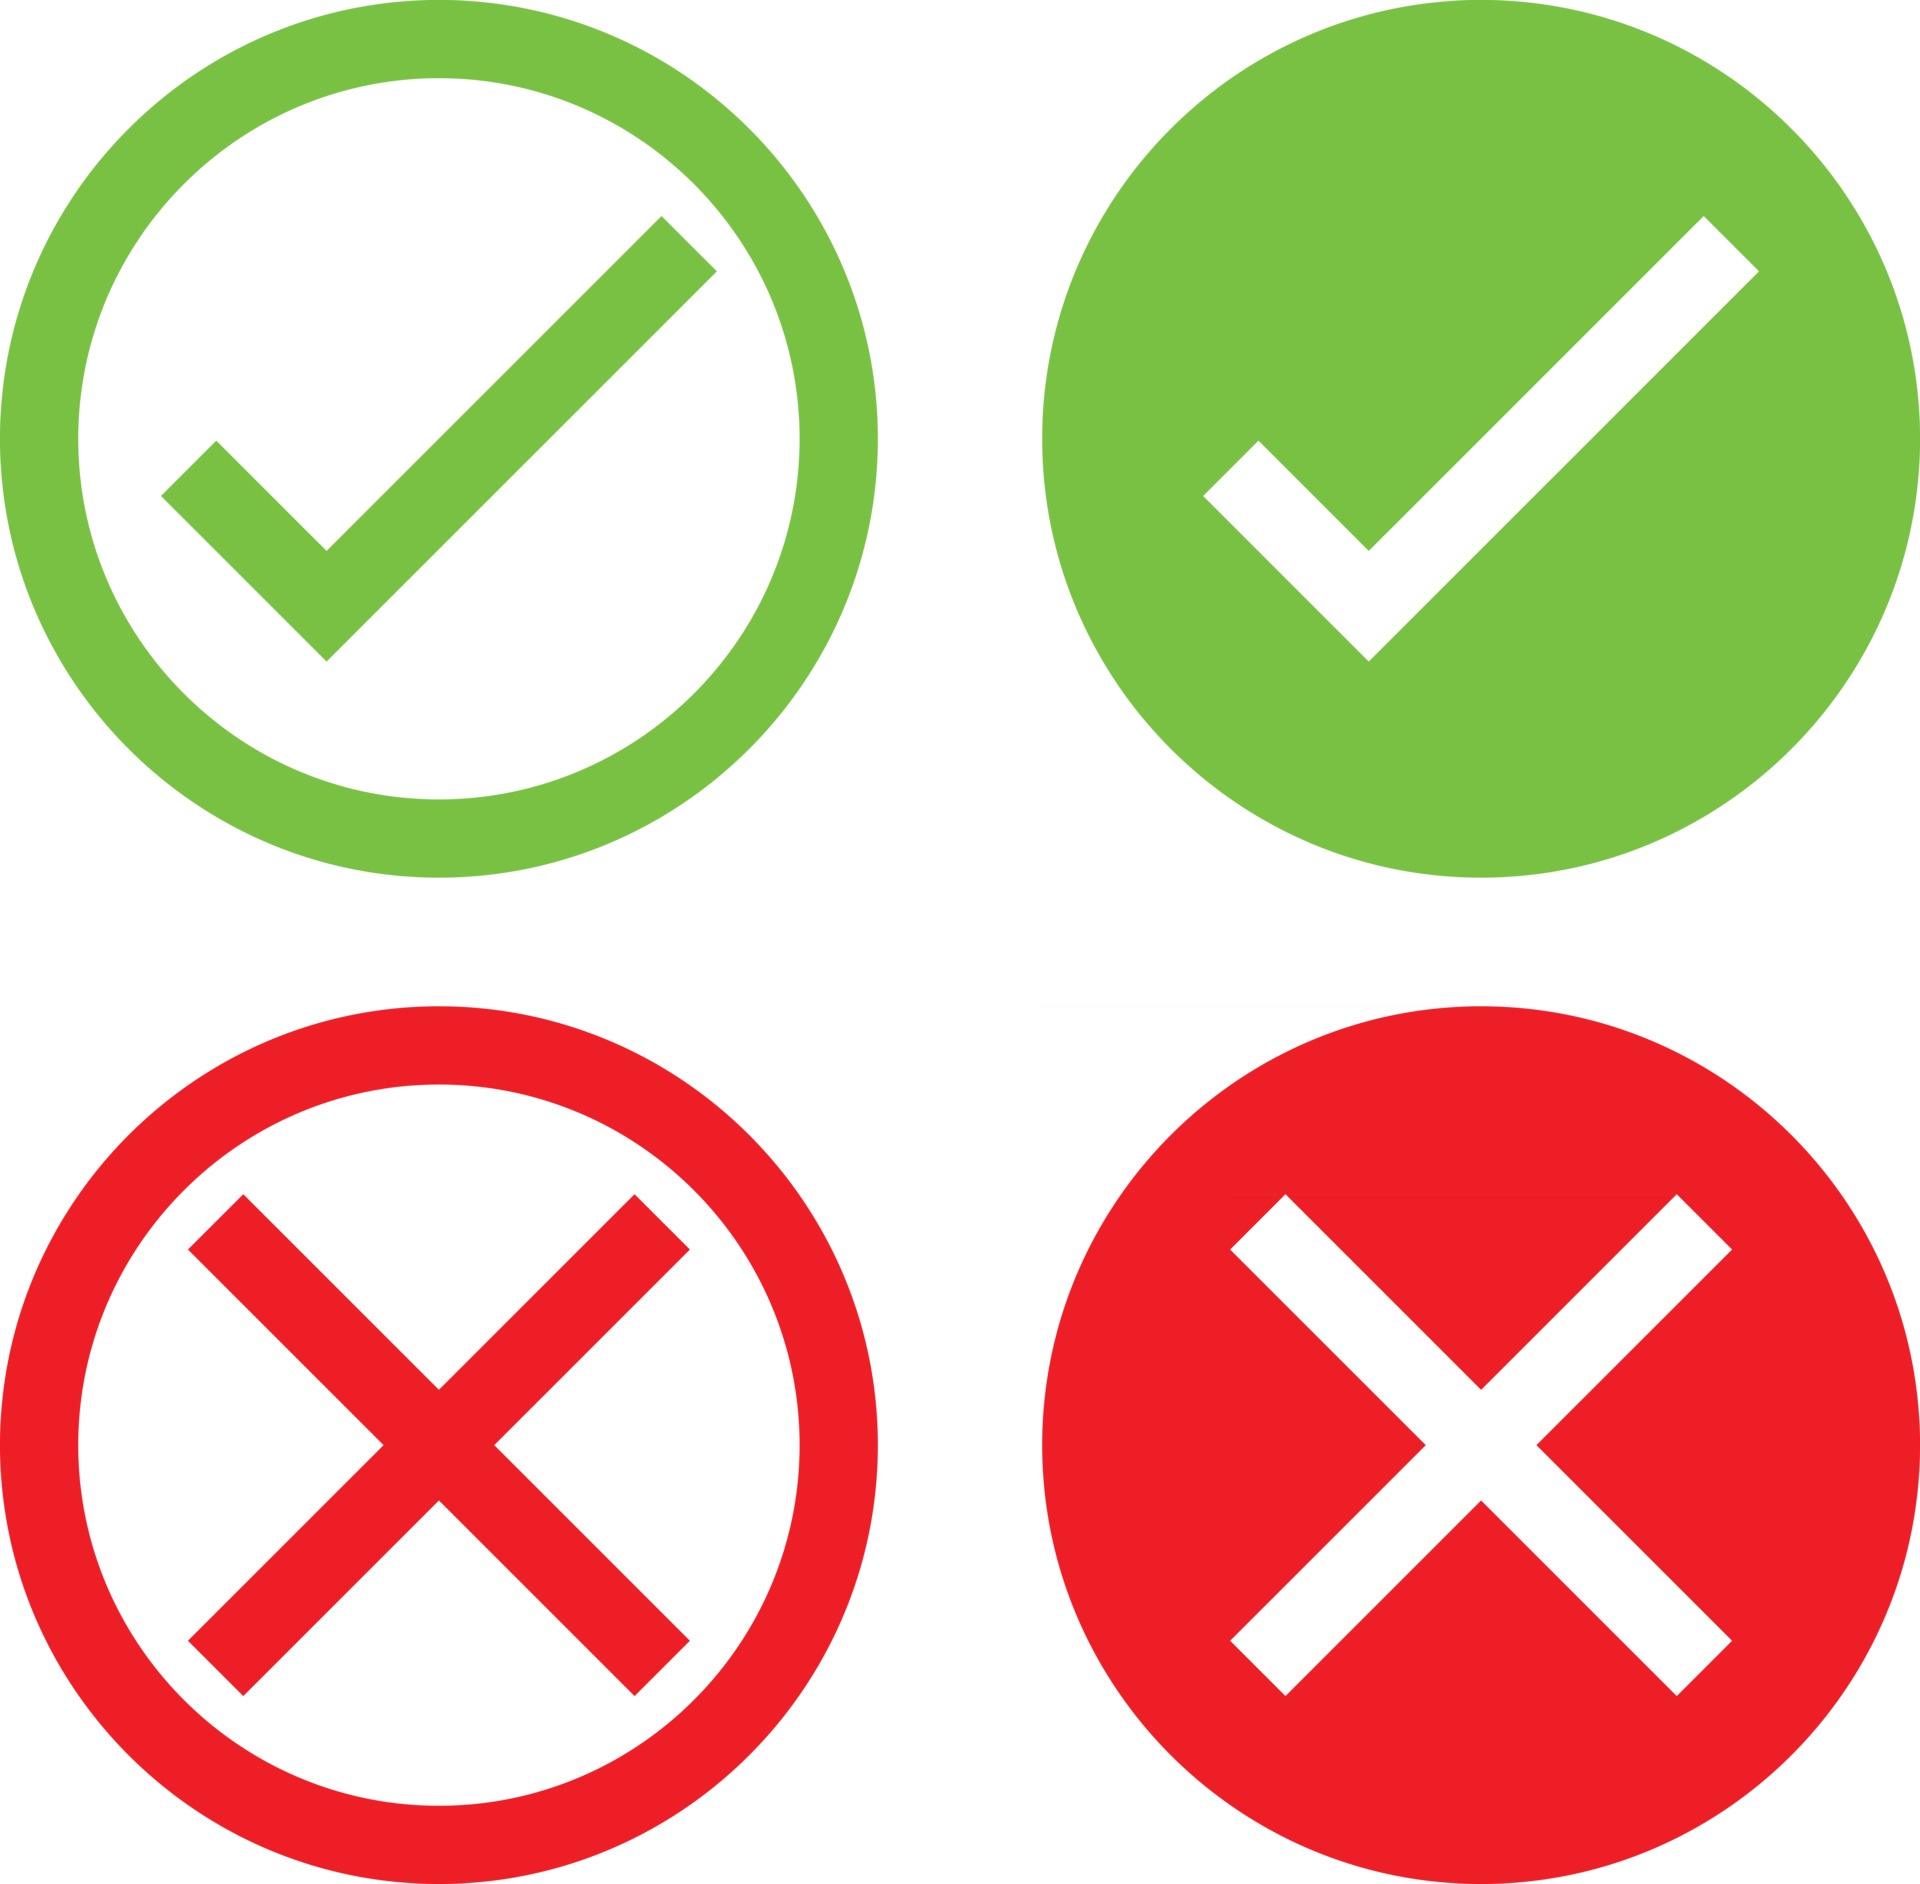 um conjunto de ícones verdes e x vermelhos que representam